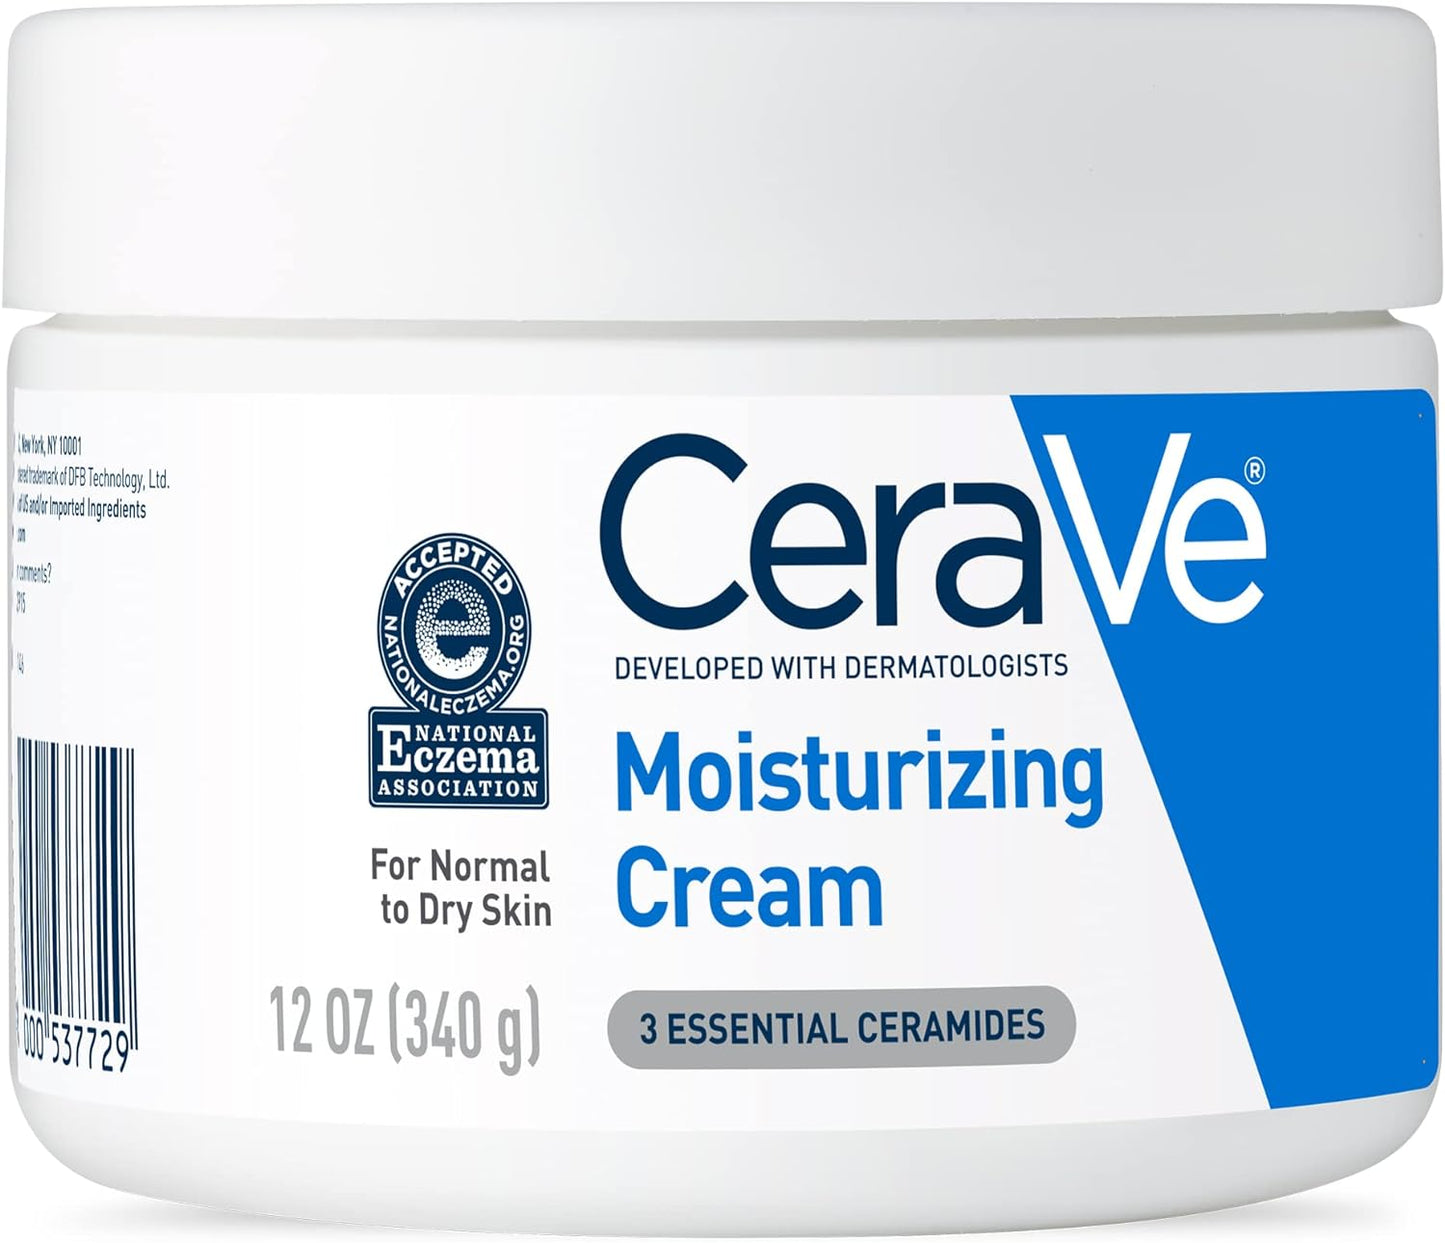 CeraVe, Creme Hidratante Corporal, com textura Cremosa e Ácido Hialurônico vendidos